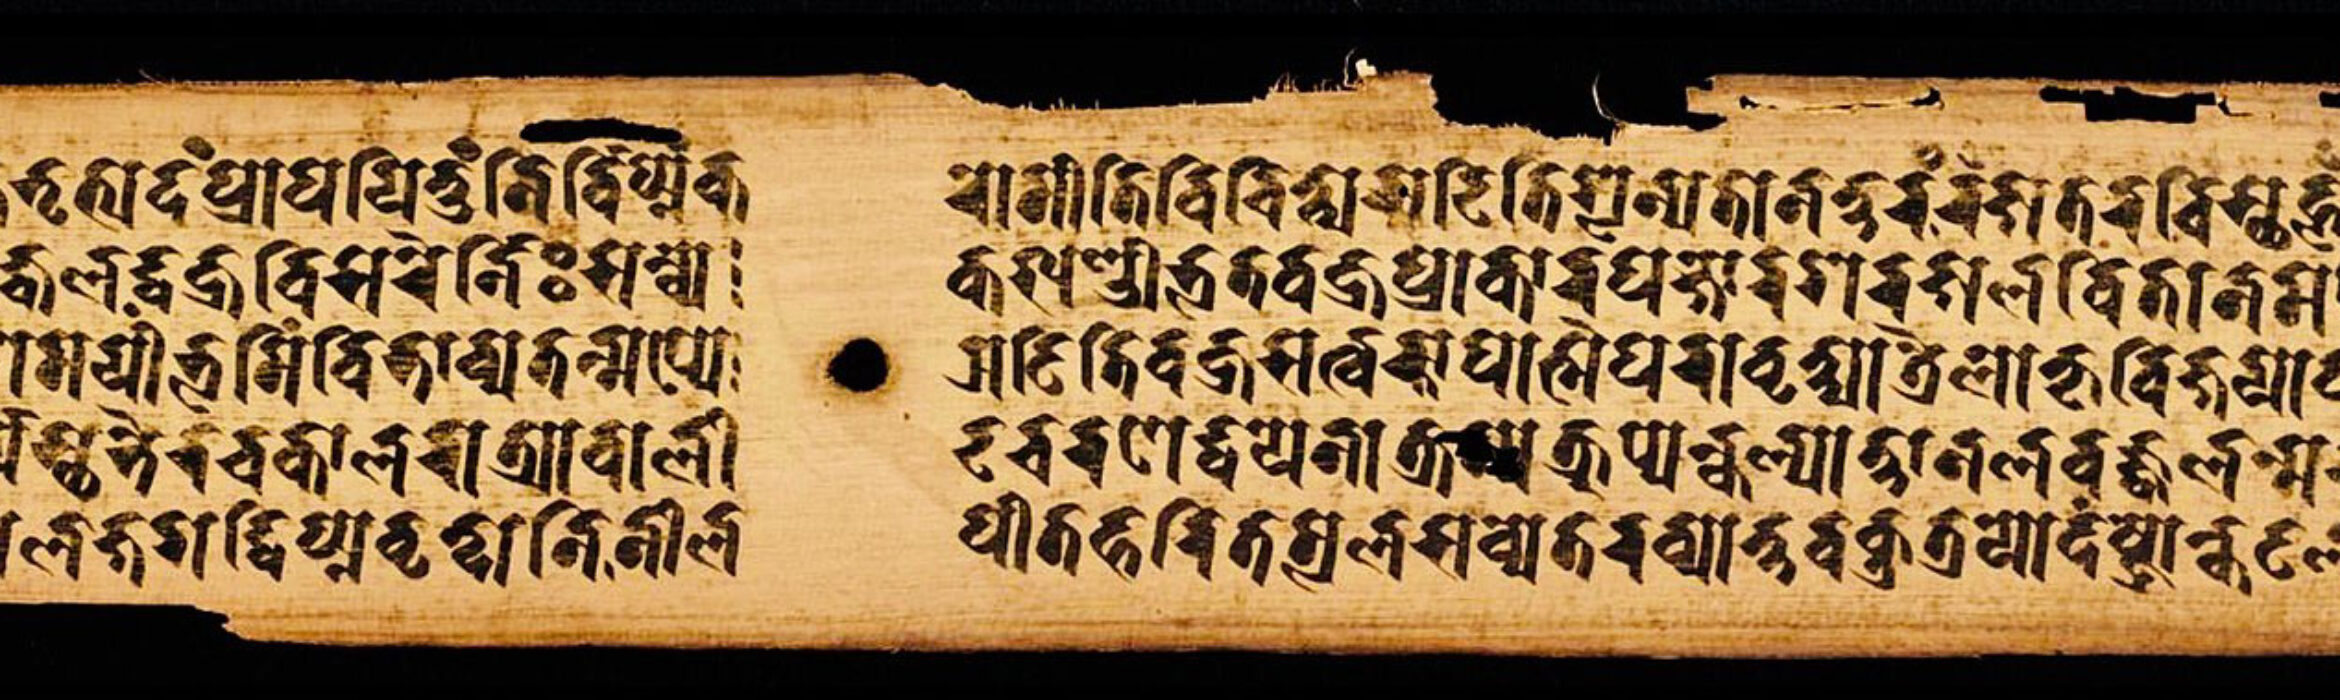 印证高端佛学讲座系列: 哲学、哲学家与佛教论藏文献（Śāstra）